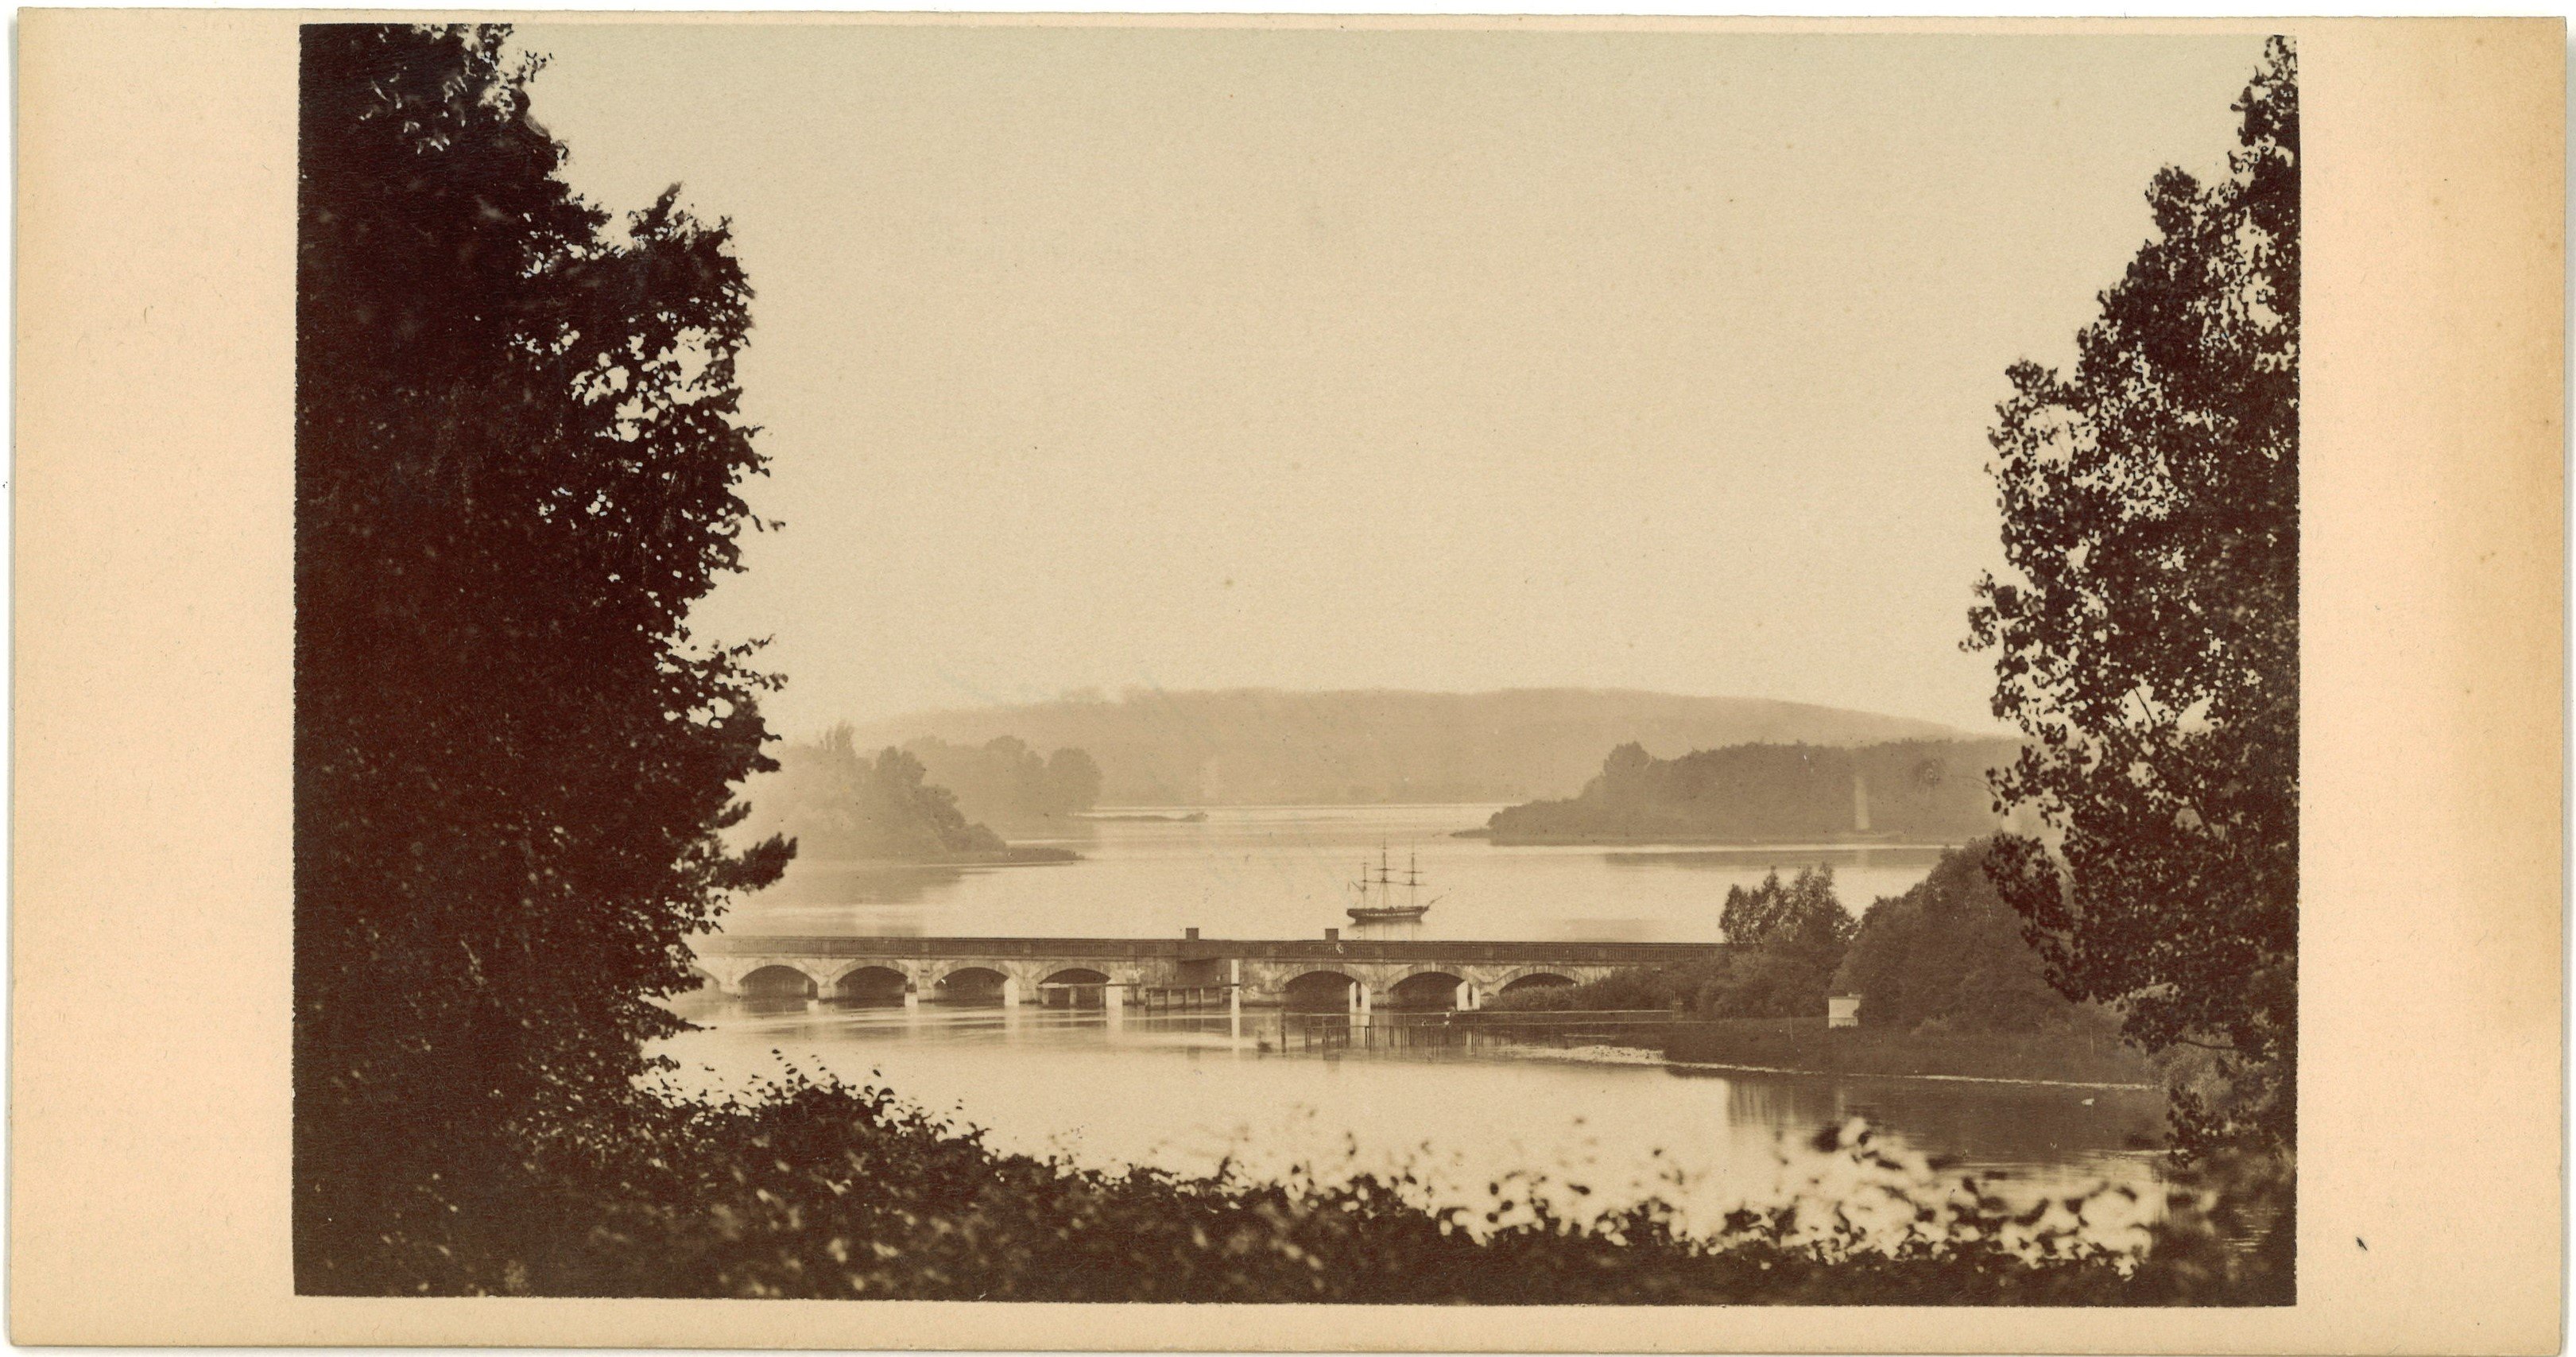 Potsdam: Glienicker Brücke (Schinkel) von Südosten (Landesgeschichtliche Vereinigung für die Mark Brandenburg e.V., Archiv CC BY)